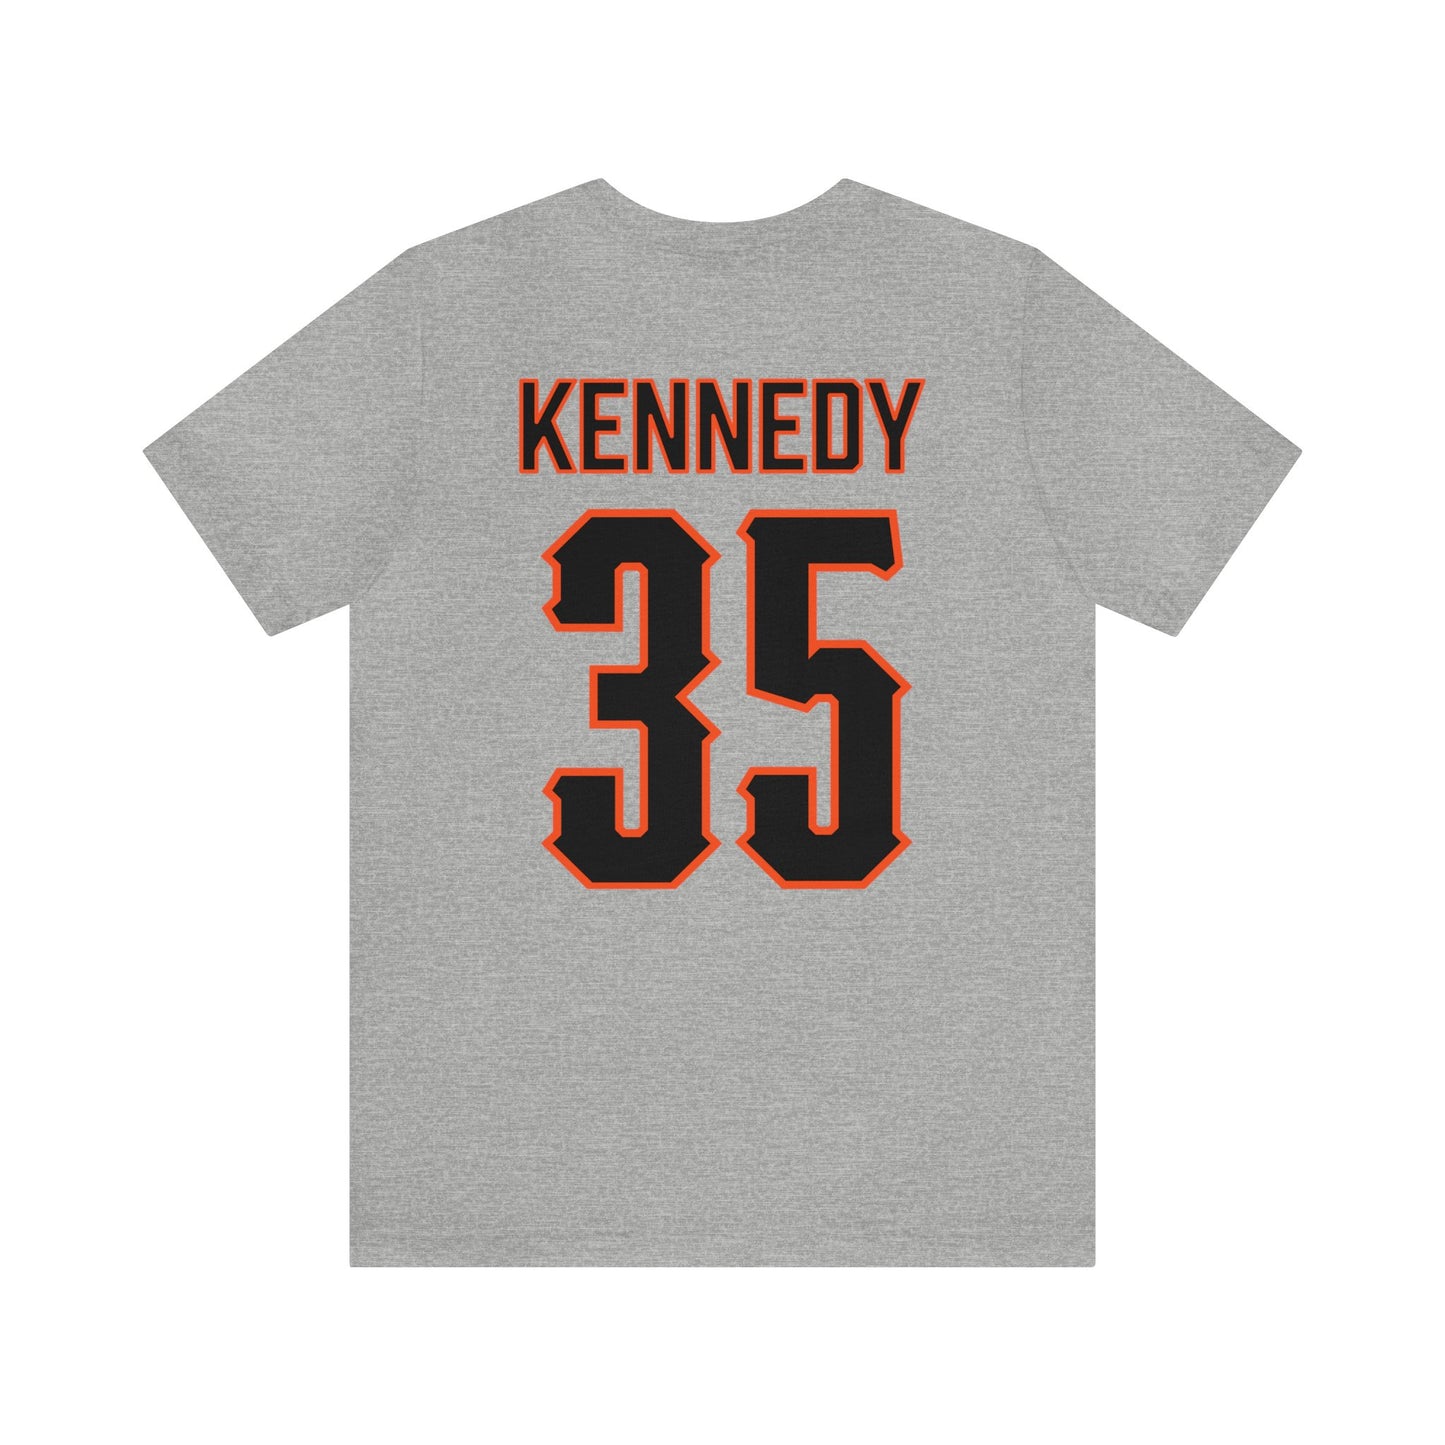 Jake Kennedy #35 Pitching Pete T-Shirt